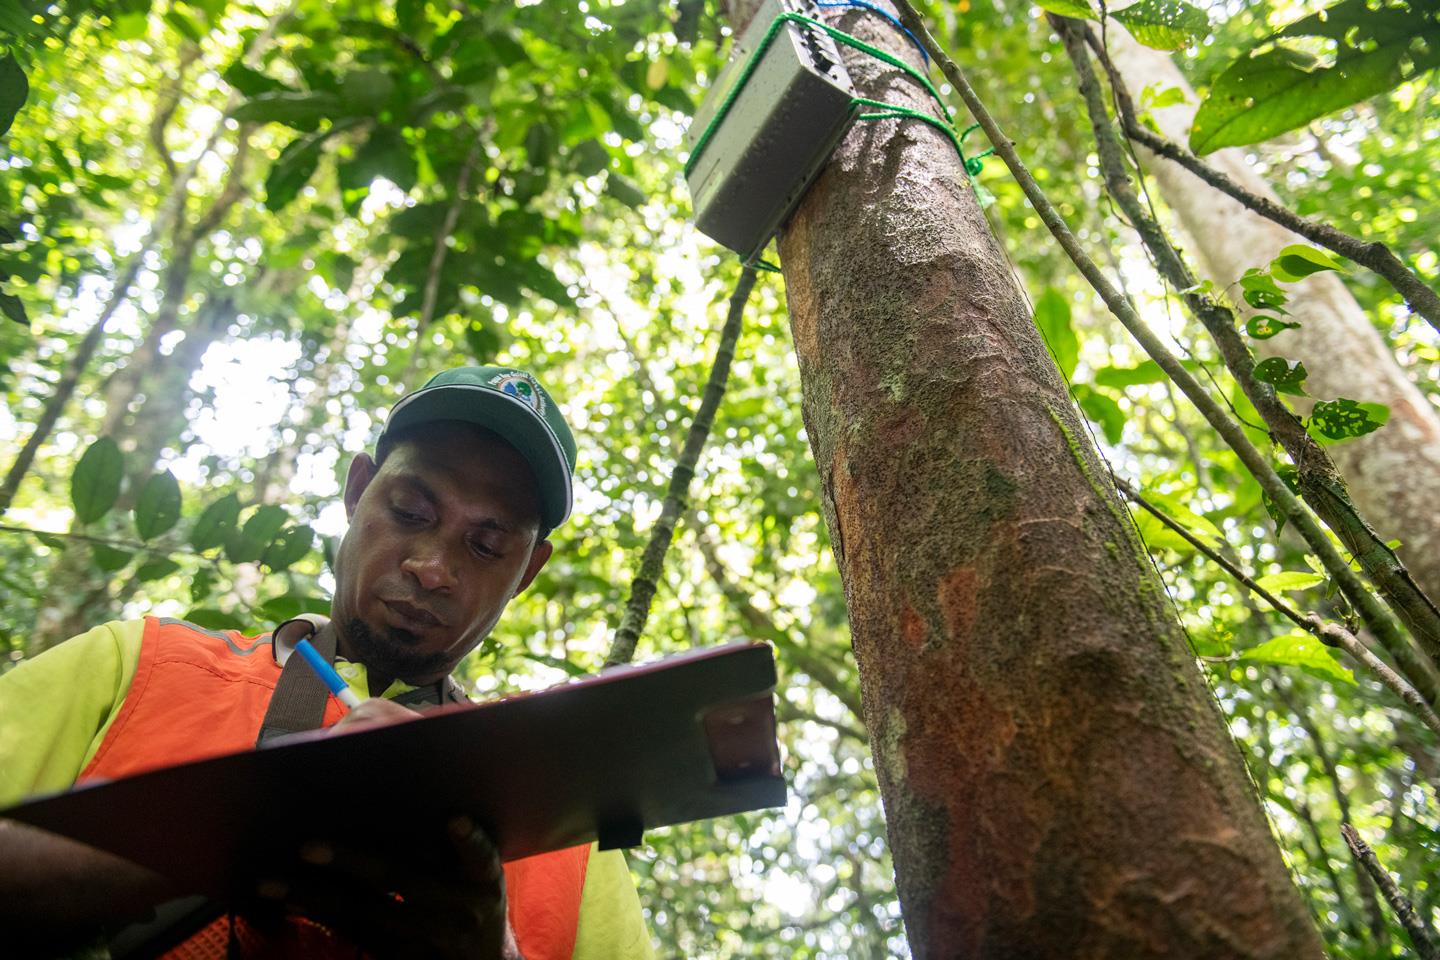 Con un nuevo instrumento denominado “Open Foris Ground”, fruto de la colaboración entre la FAO y Google, Besta puede demarcar y vigilar su zona forestal mediante una interfaz de mapa para asegurarse de que los bosques estén a salvo de incursiones.